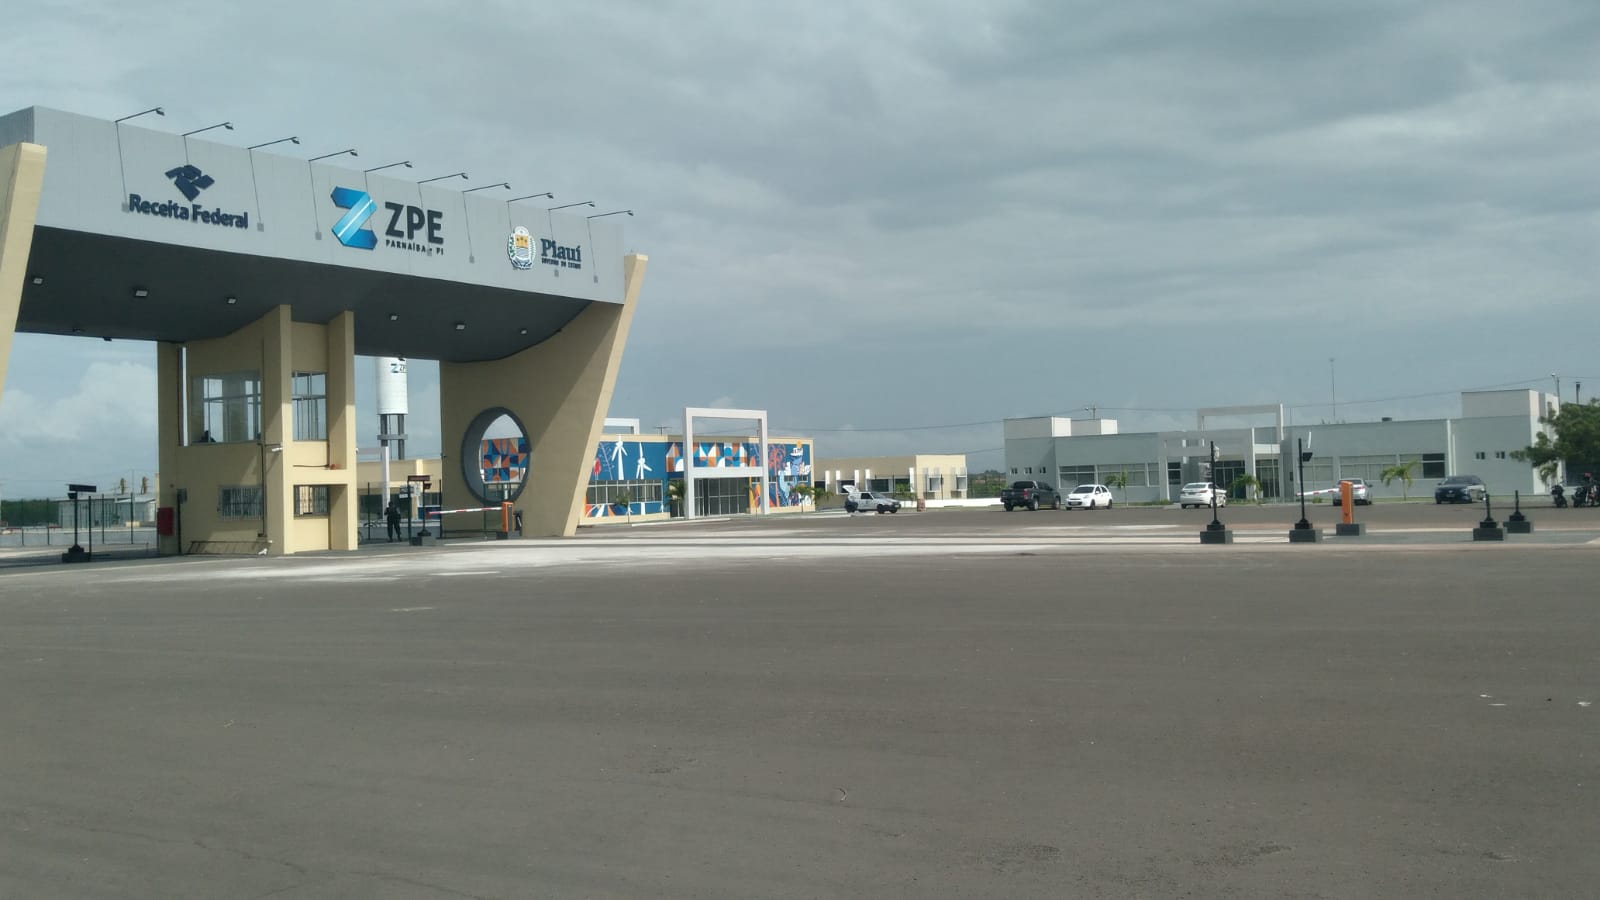 Estacionamento e guarita de acesso à ZPE de Parnaíba, a Zona de Processamento de Exportação do Piauí, que deve receber instalações de hidrogênio e amônia verdes (Foto: X ZPE)